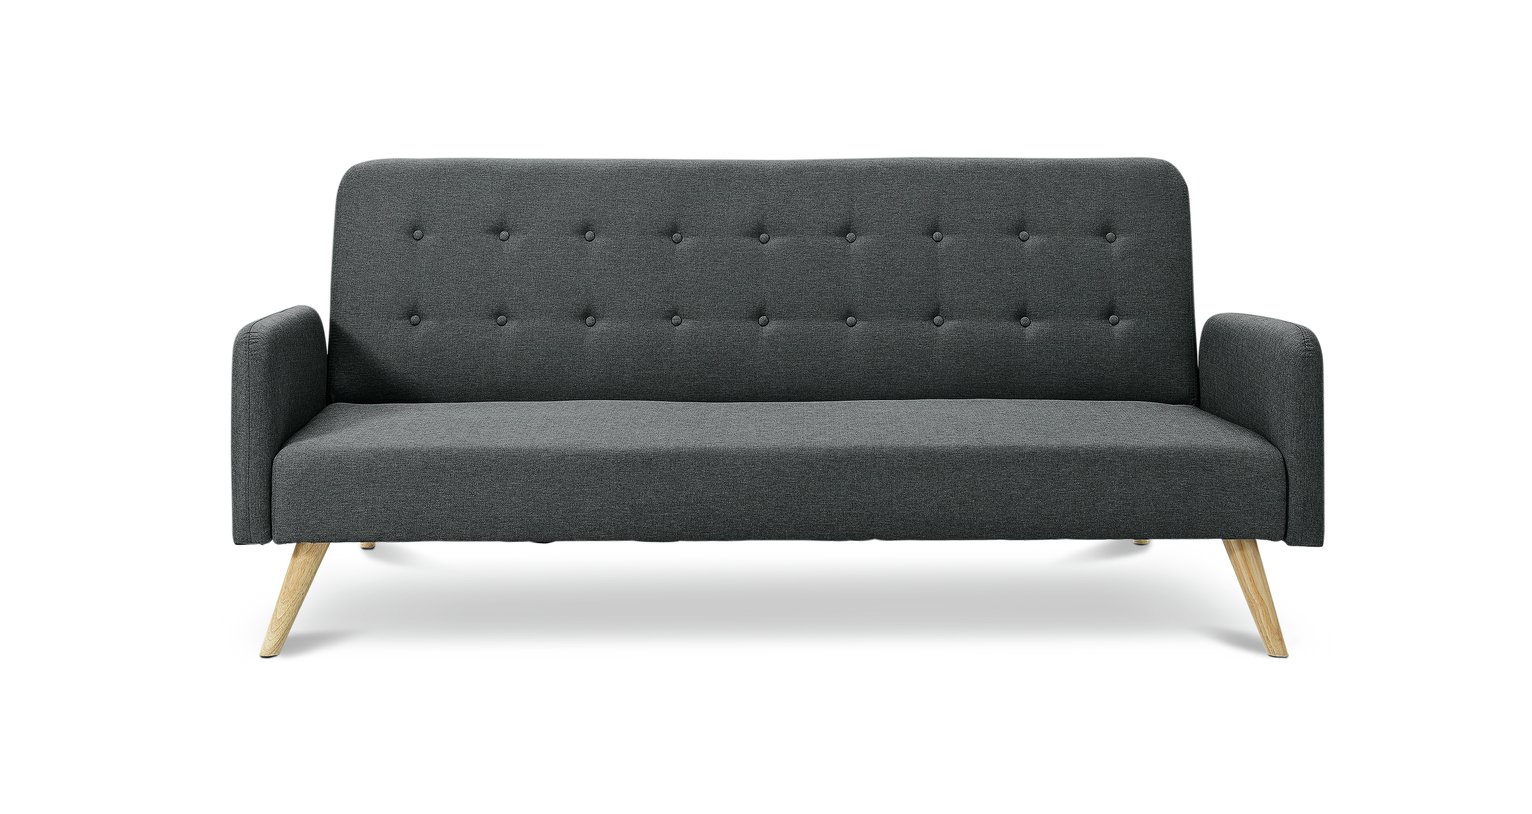 Habitat Marseille Clic Clac Fabric Sofa Bed - Black